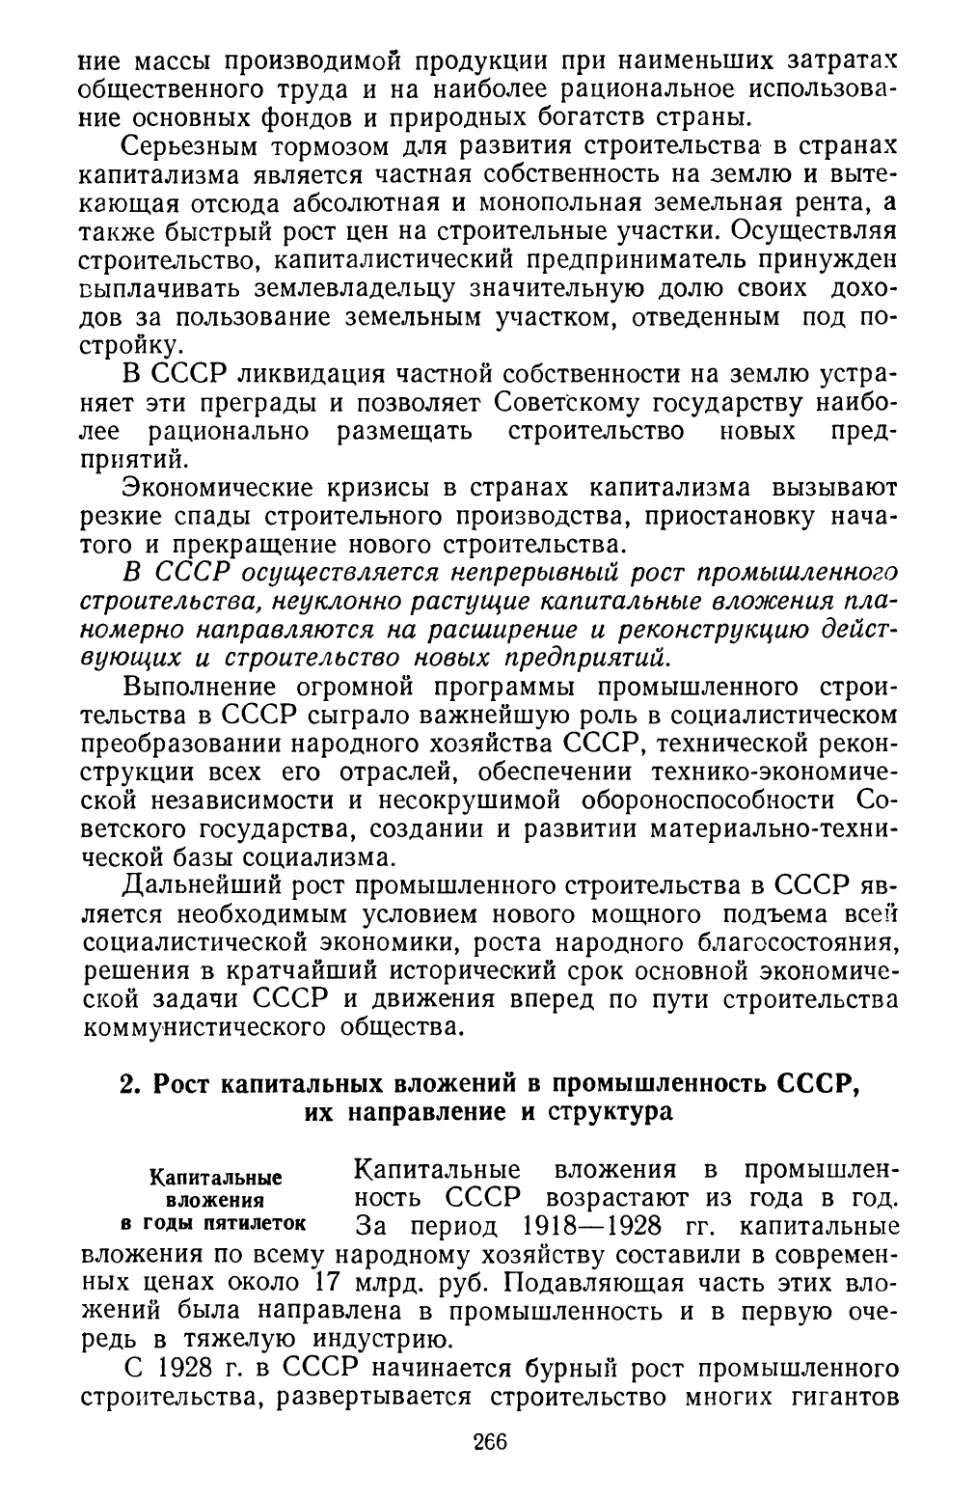 2. Pост капитальных вложений в промышленность СССР, их направление и структура